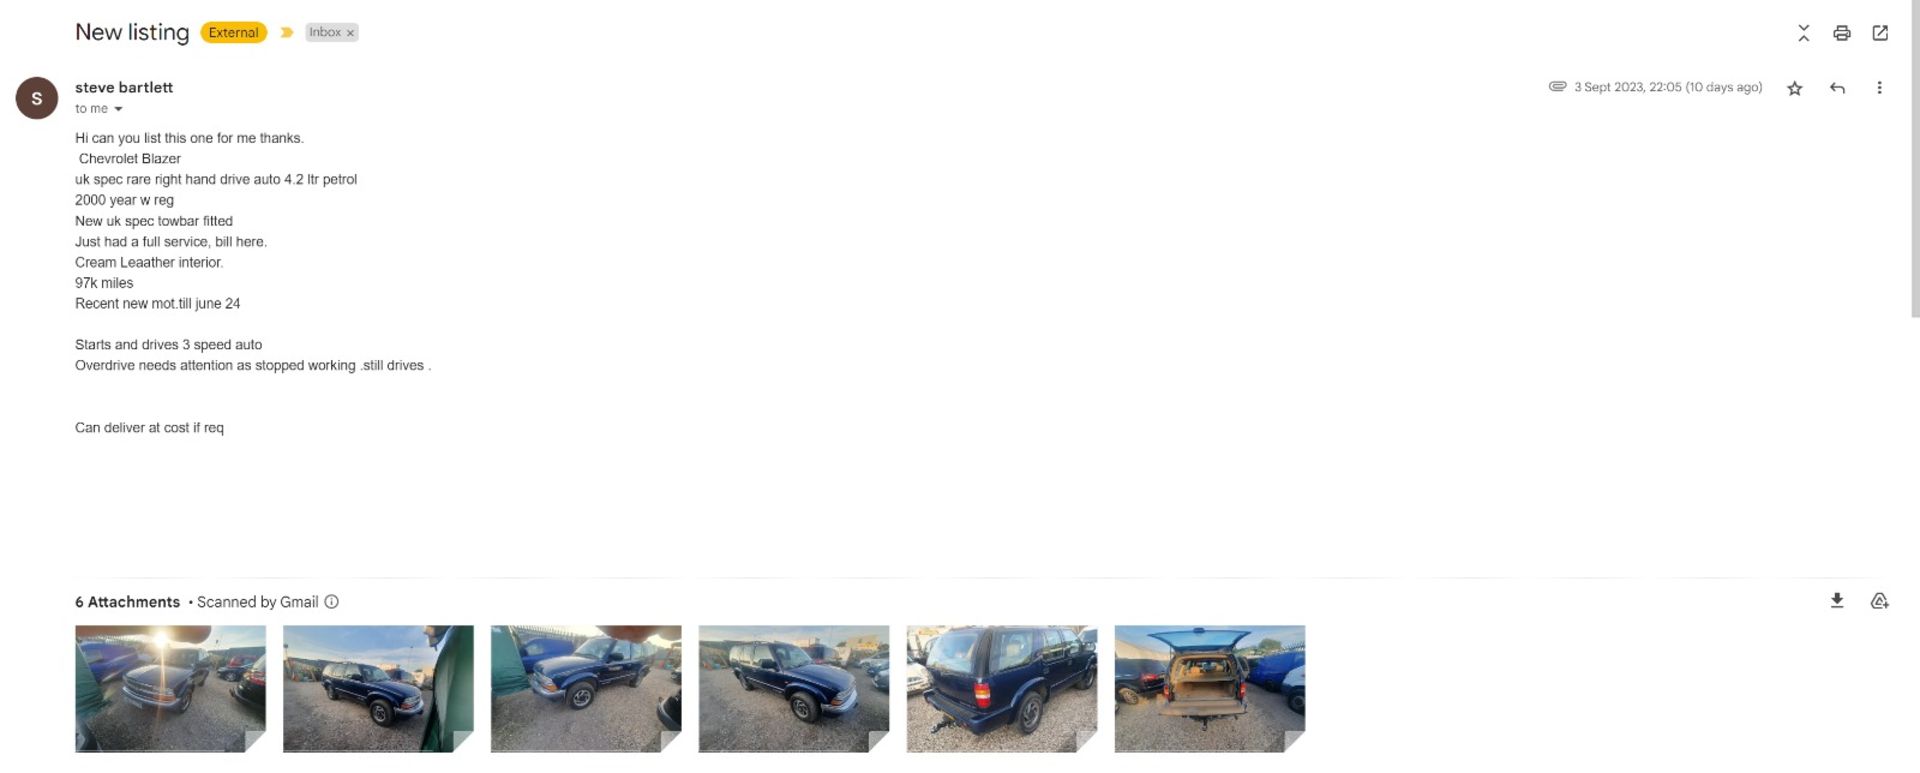 2000 CHEVROLET GMC BLAZER V6 AUTO BLUE SUV *NO VAT* - Image 14 of 14